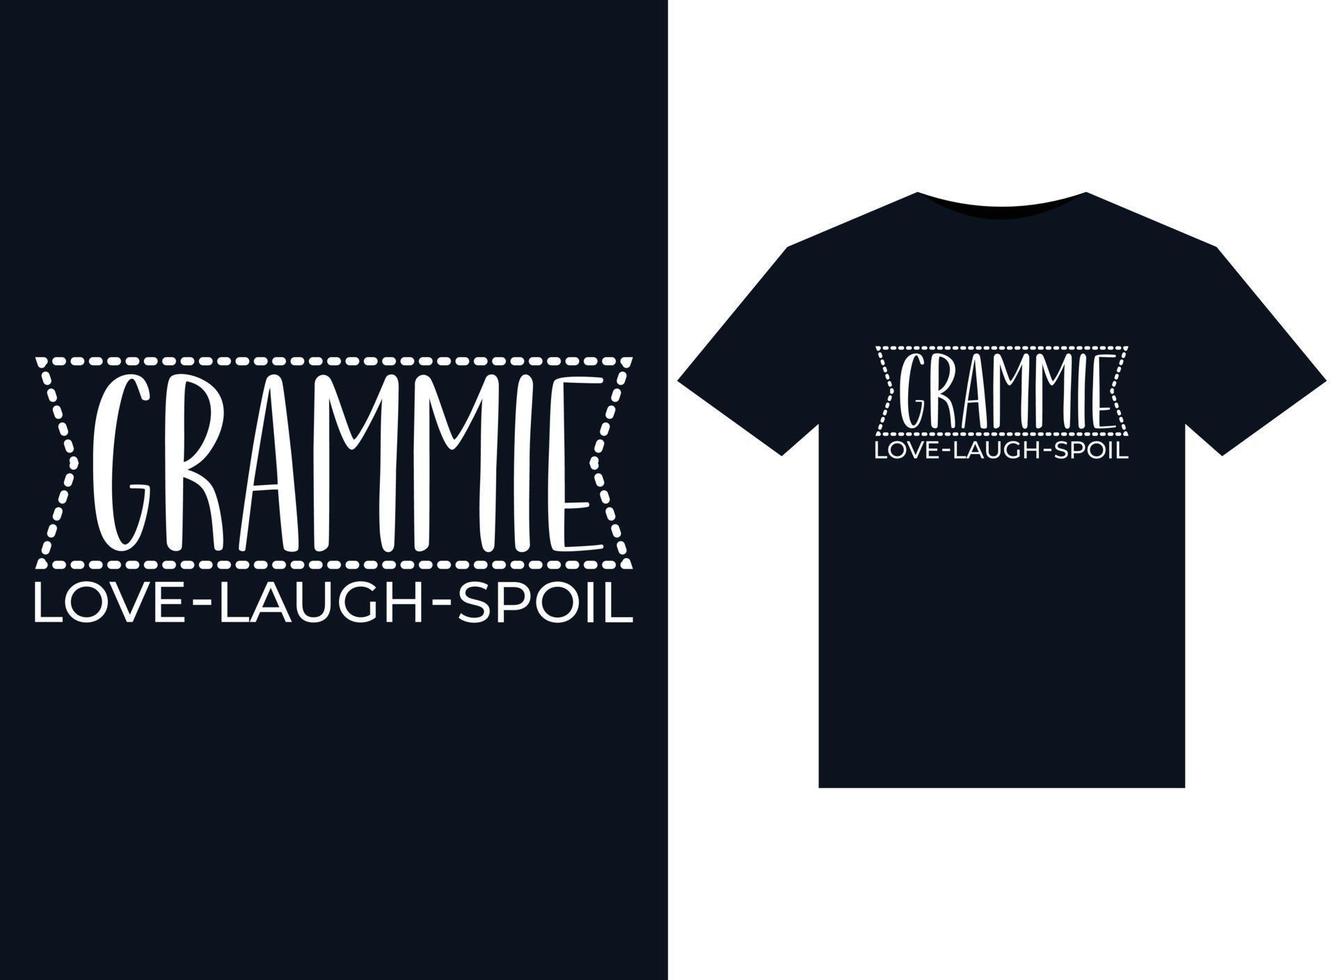 grammie liebe, lache, verwöhne illustrationen für druckfertige t-shirt-designs vektor